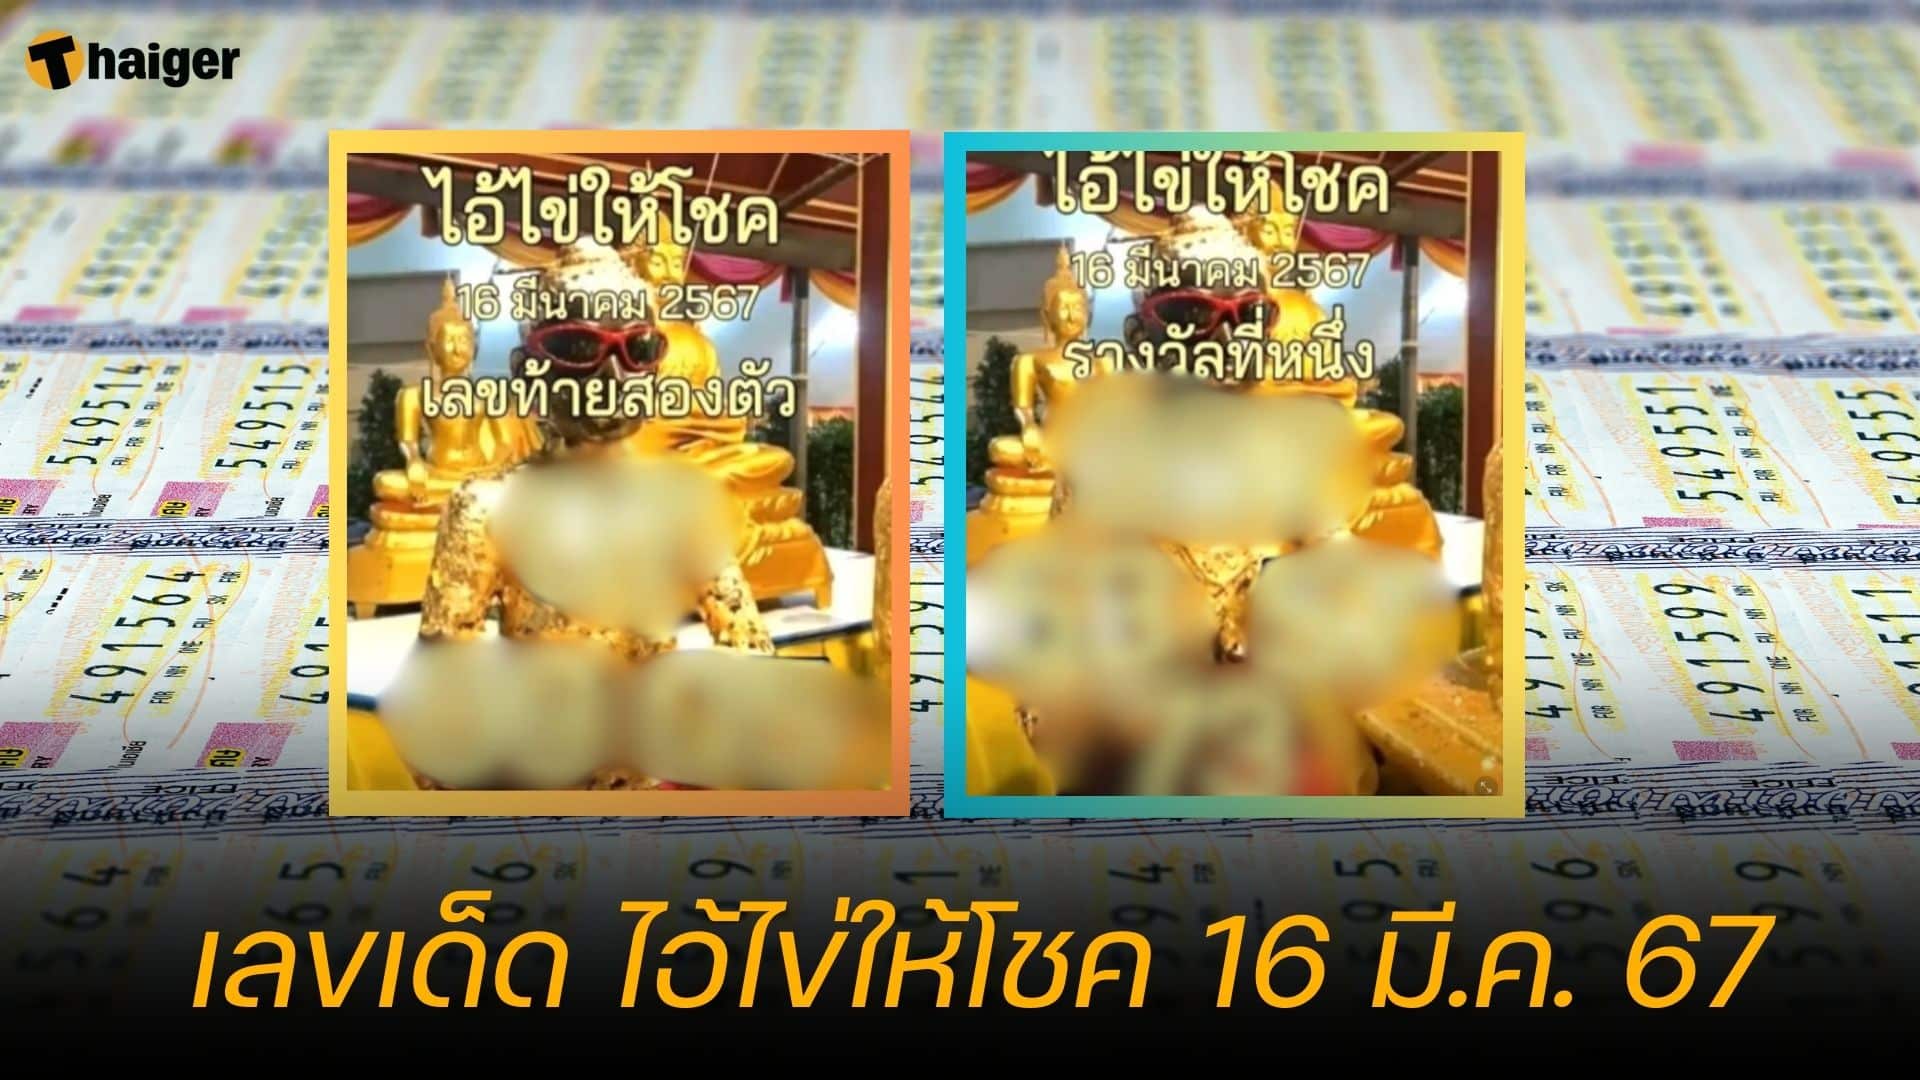 เลขเด็ด ไอ้ไข่ให้โชค แนวทางหวยงวด 16 มี.ค. 67 | Thaiger ข่าวไทย